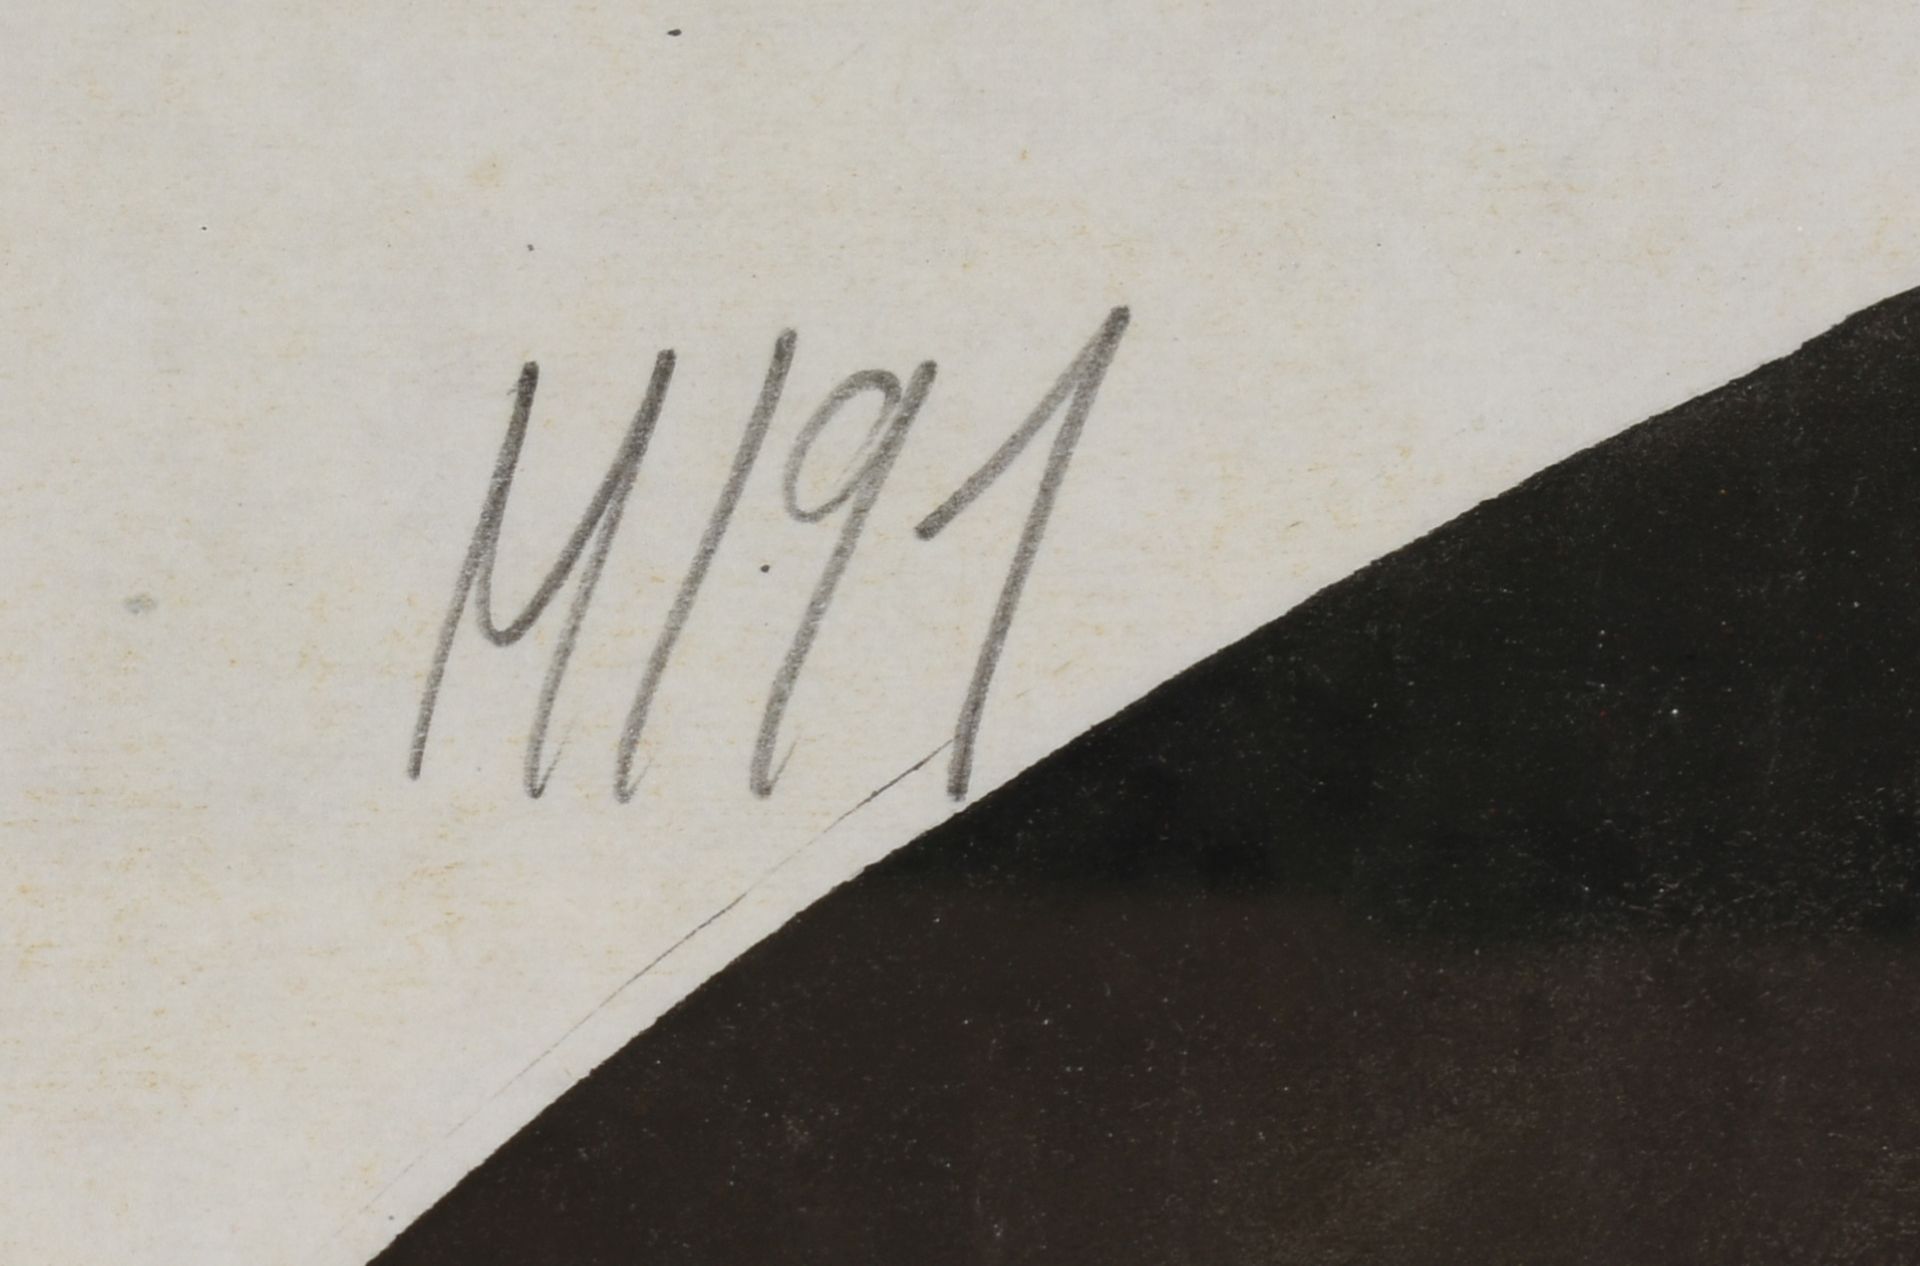 Monogrammiert Aquarell hinter Glas, o. T., oben links in Blei Monogramm "M" und datiert (19)91, - Bild 4 aus 4